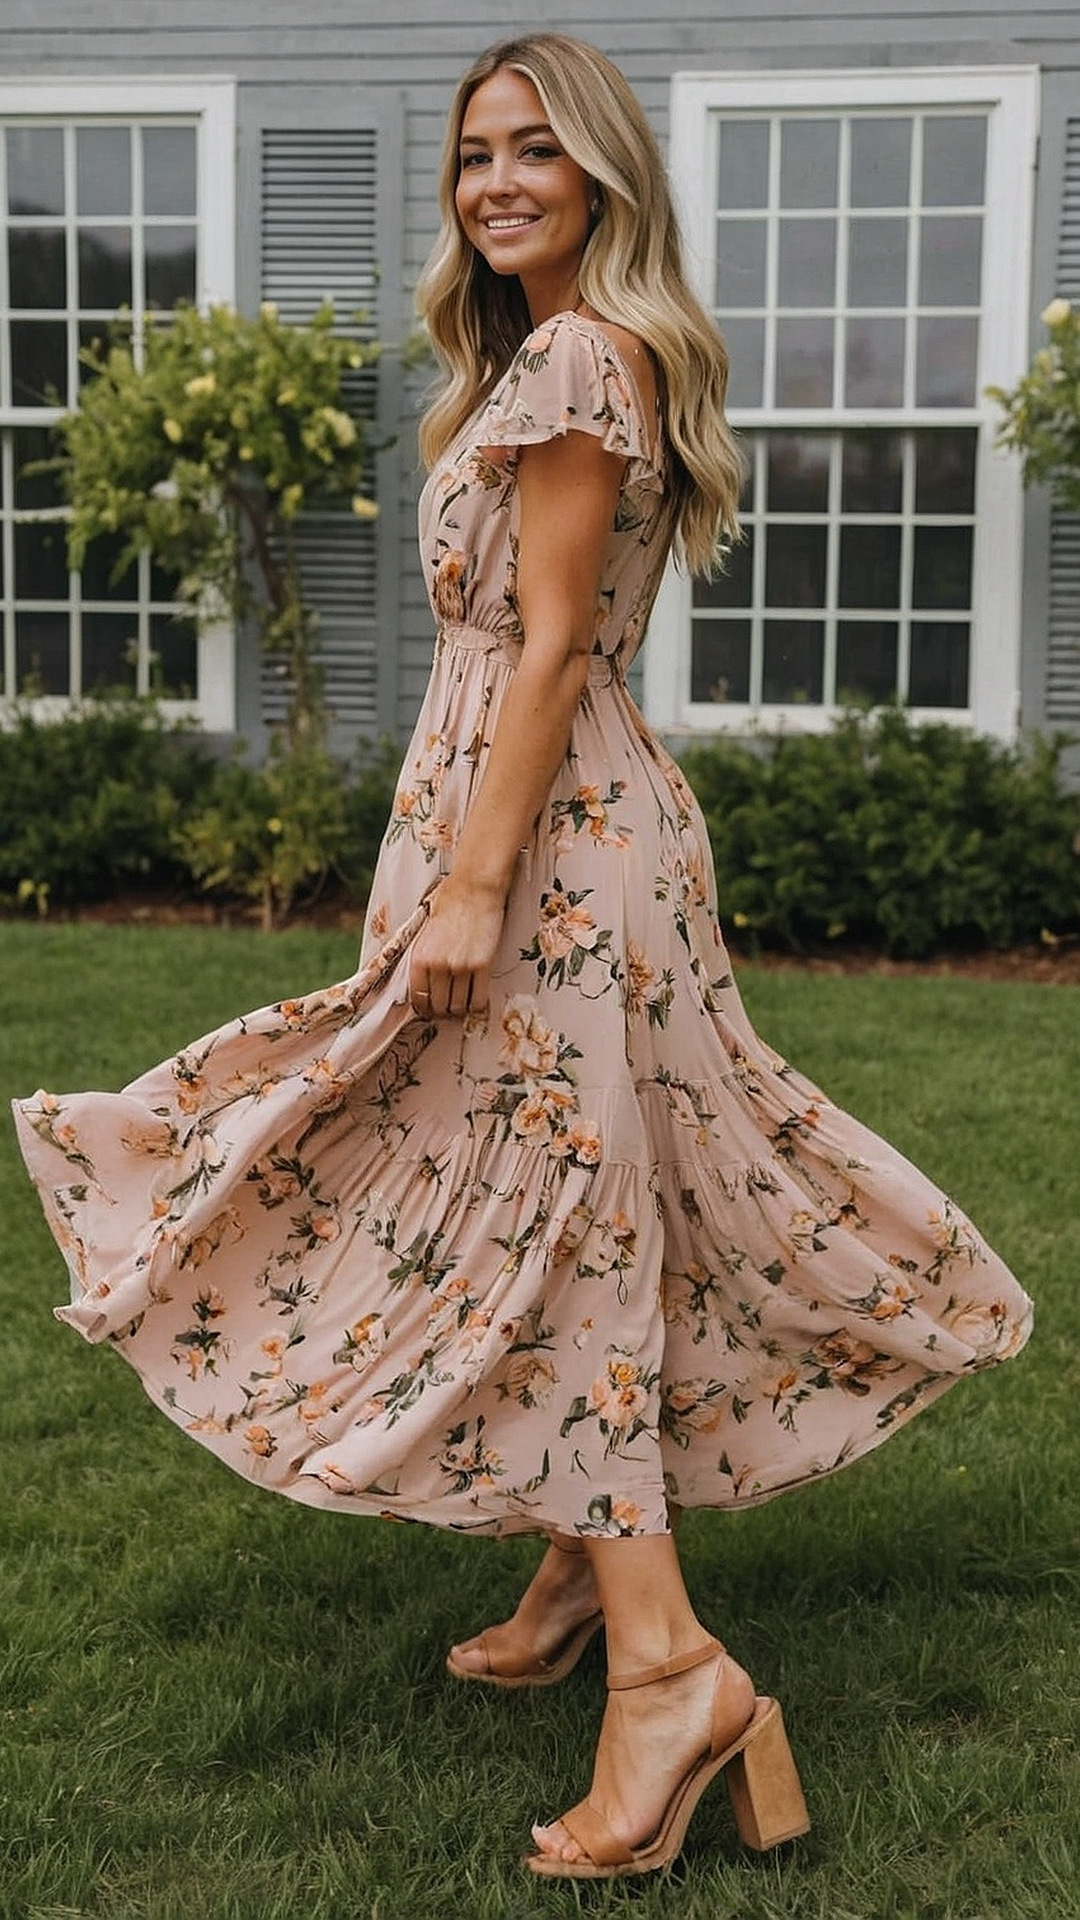 Flower Power: Floral Maxi Dress Inspiration